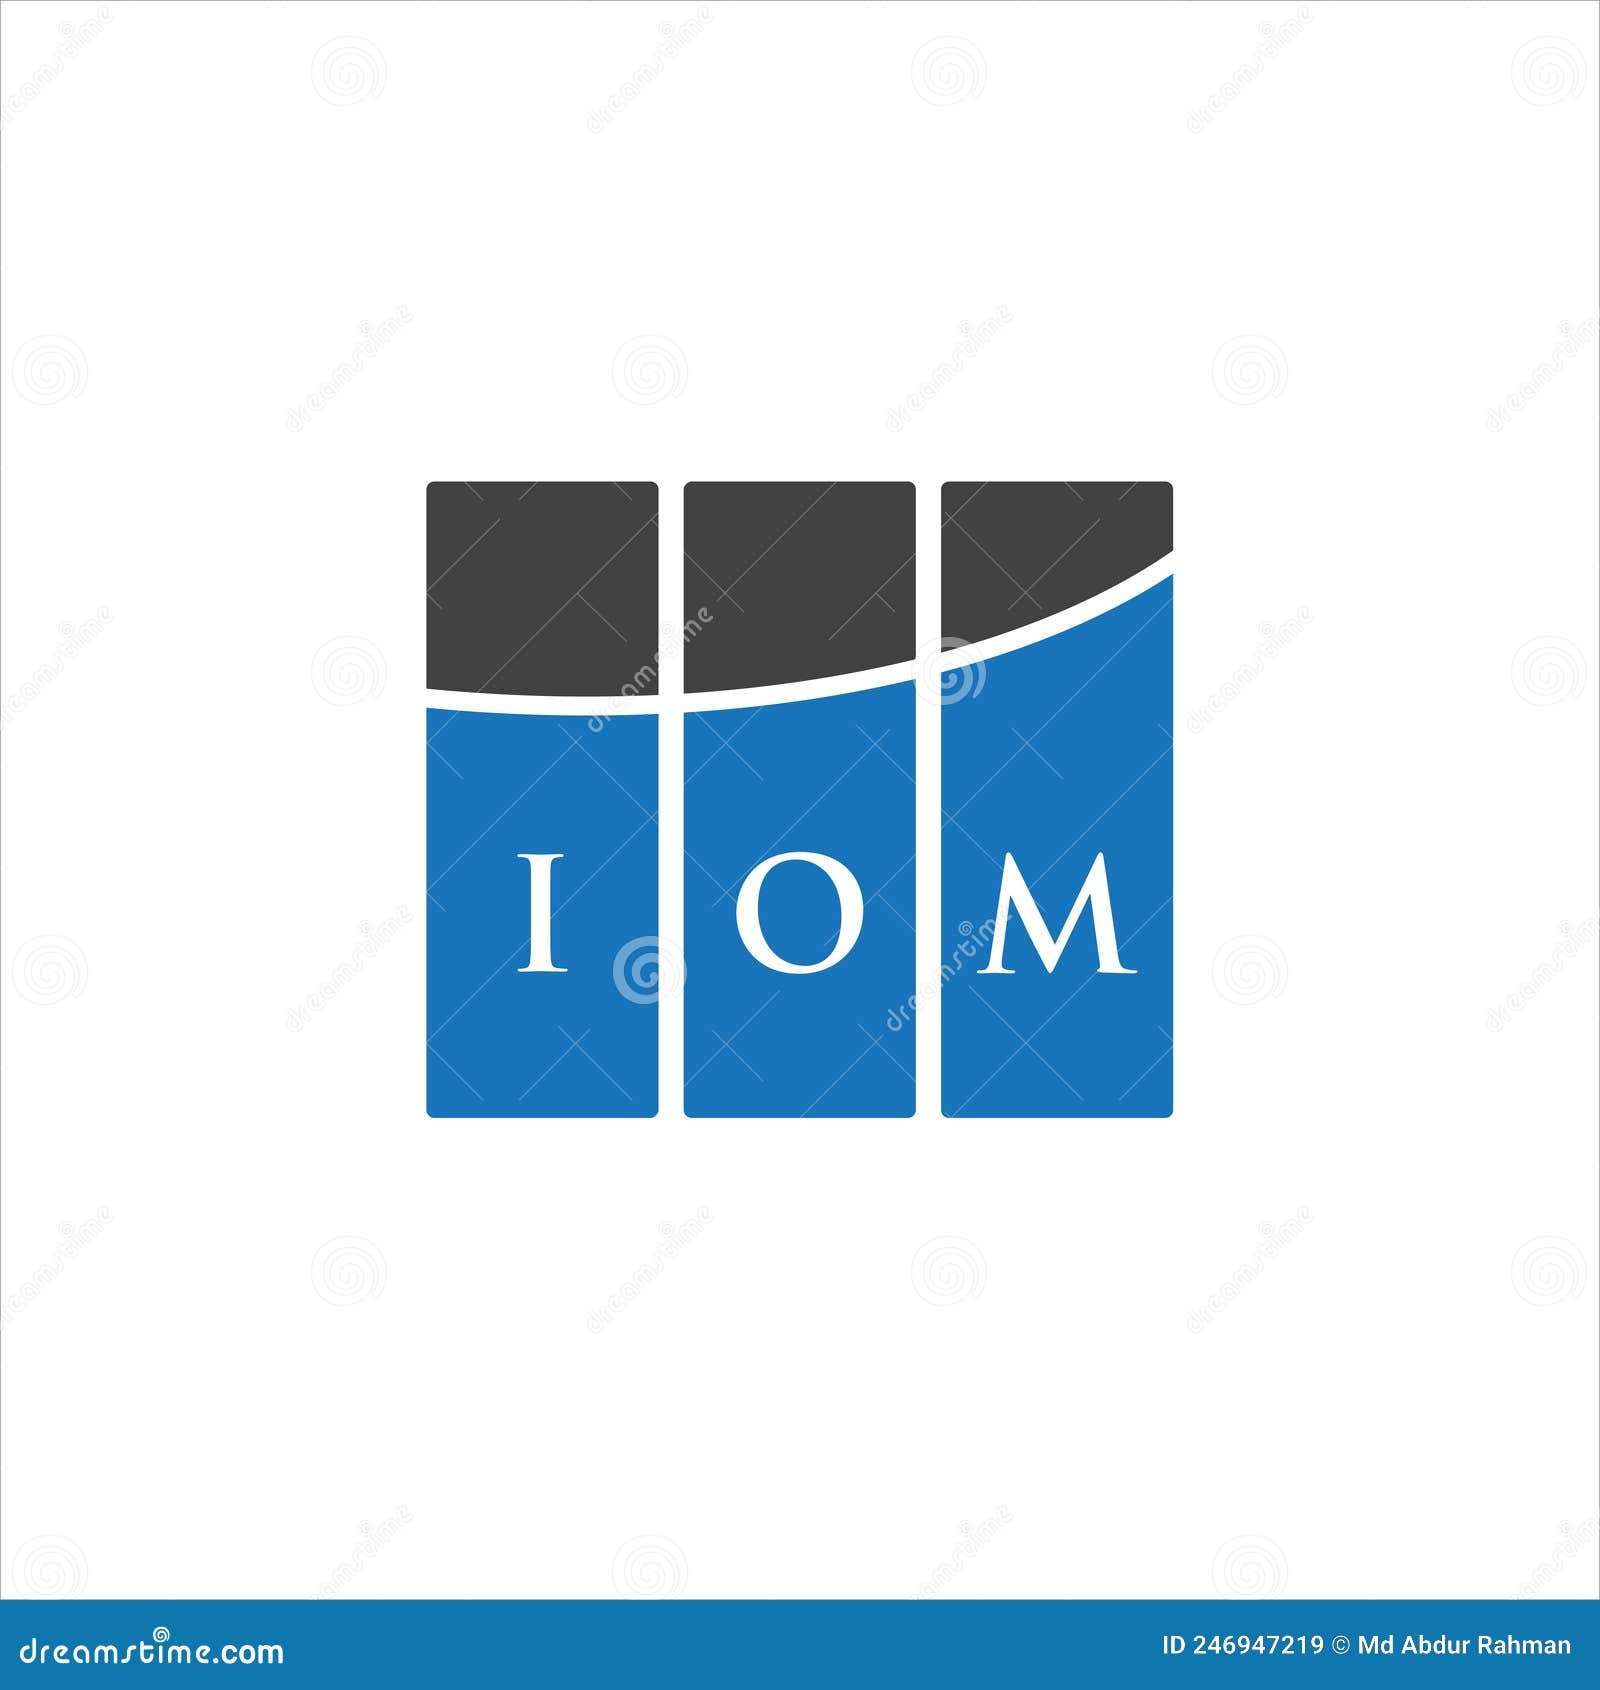 iom letter logo  on white background. iom creative initials letter logo concept. iom letter 